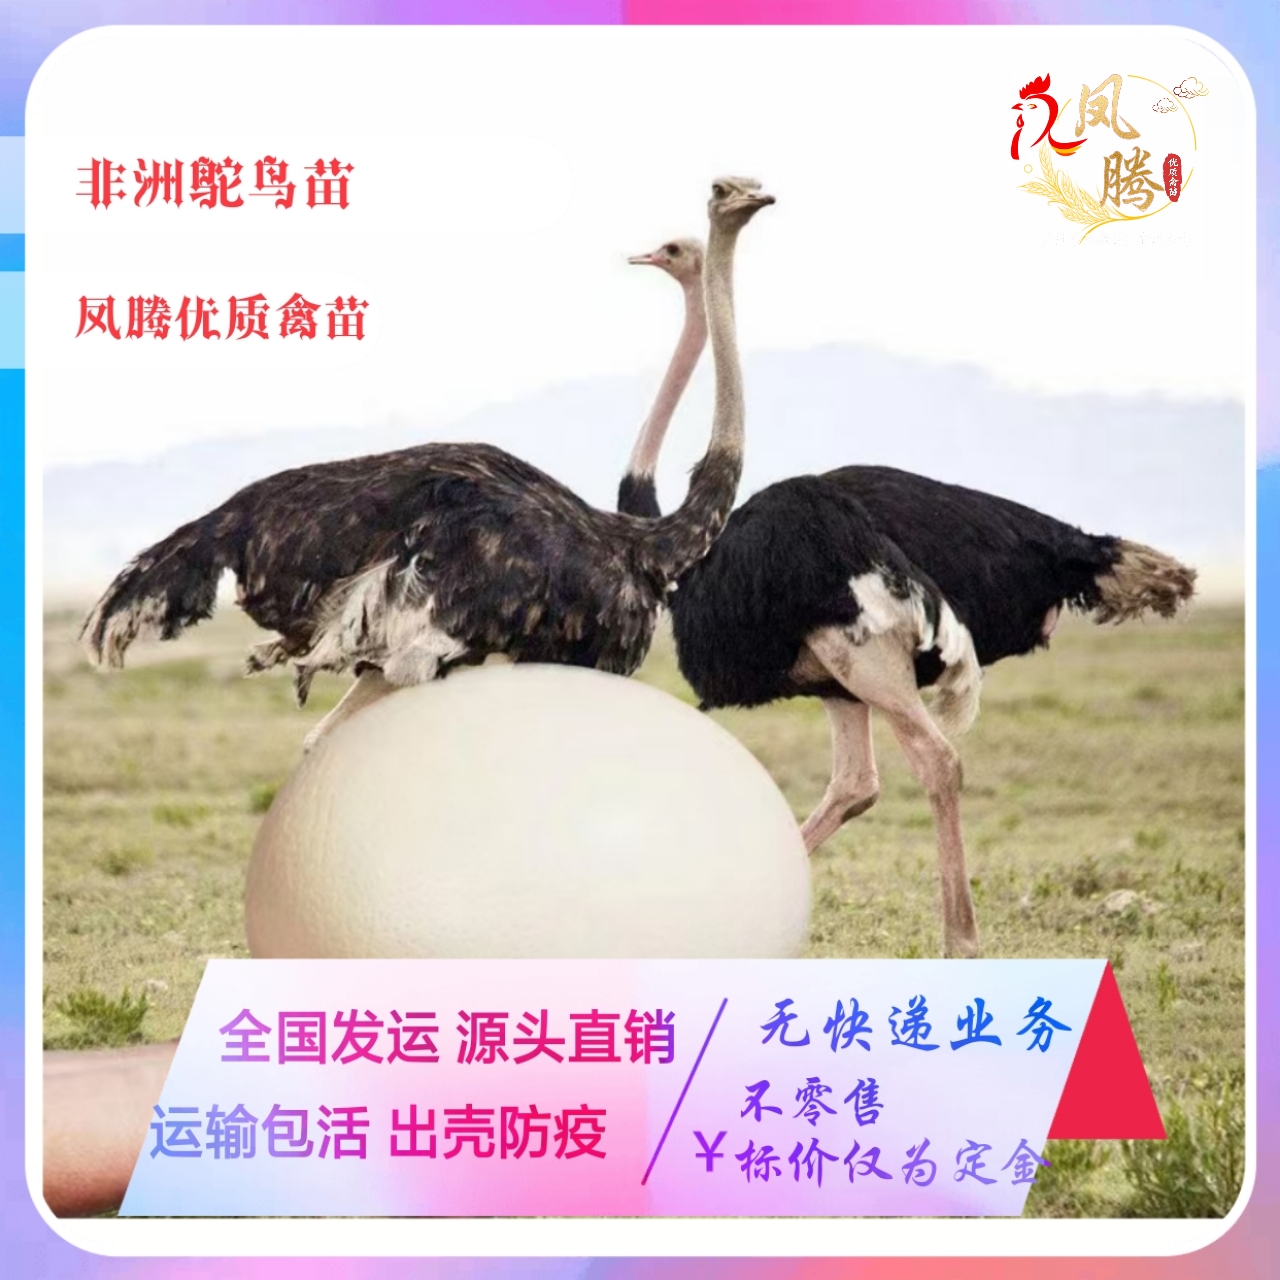 广州鸵鸟苗非洲鸵鸟苗出壳7天苗年可长150斤成活率高生长速度快